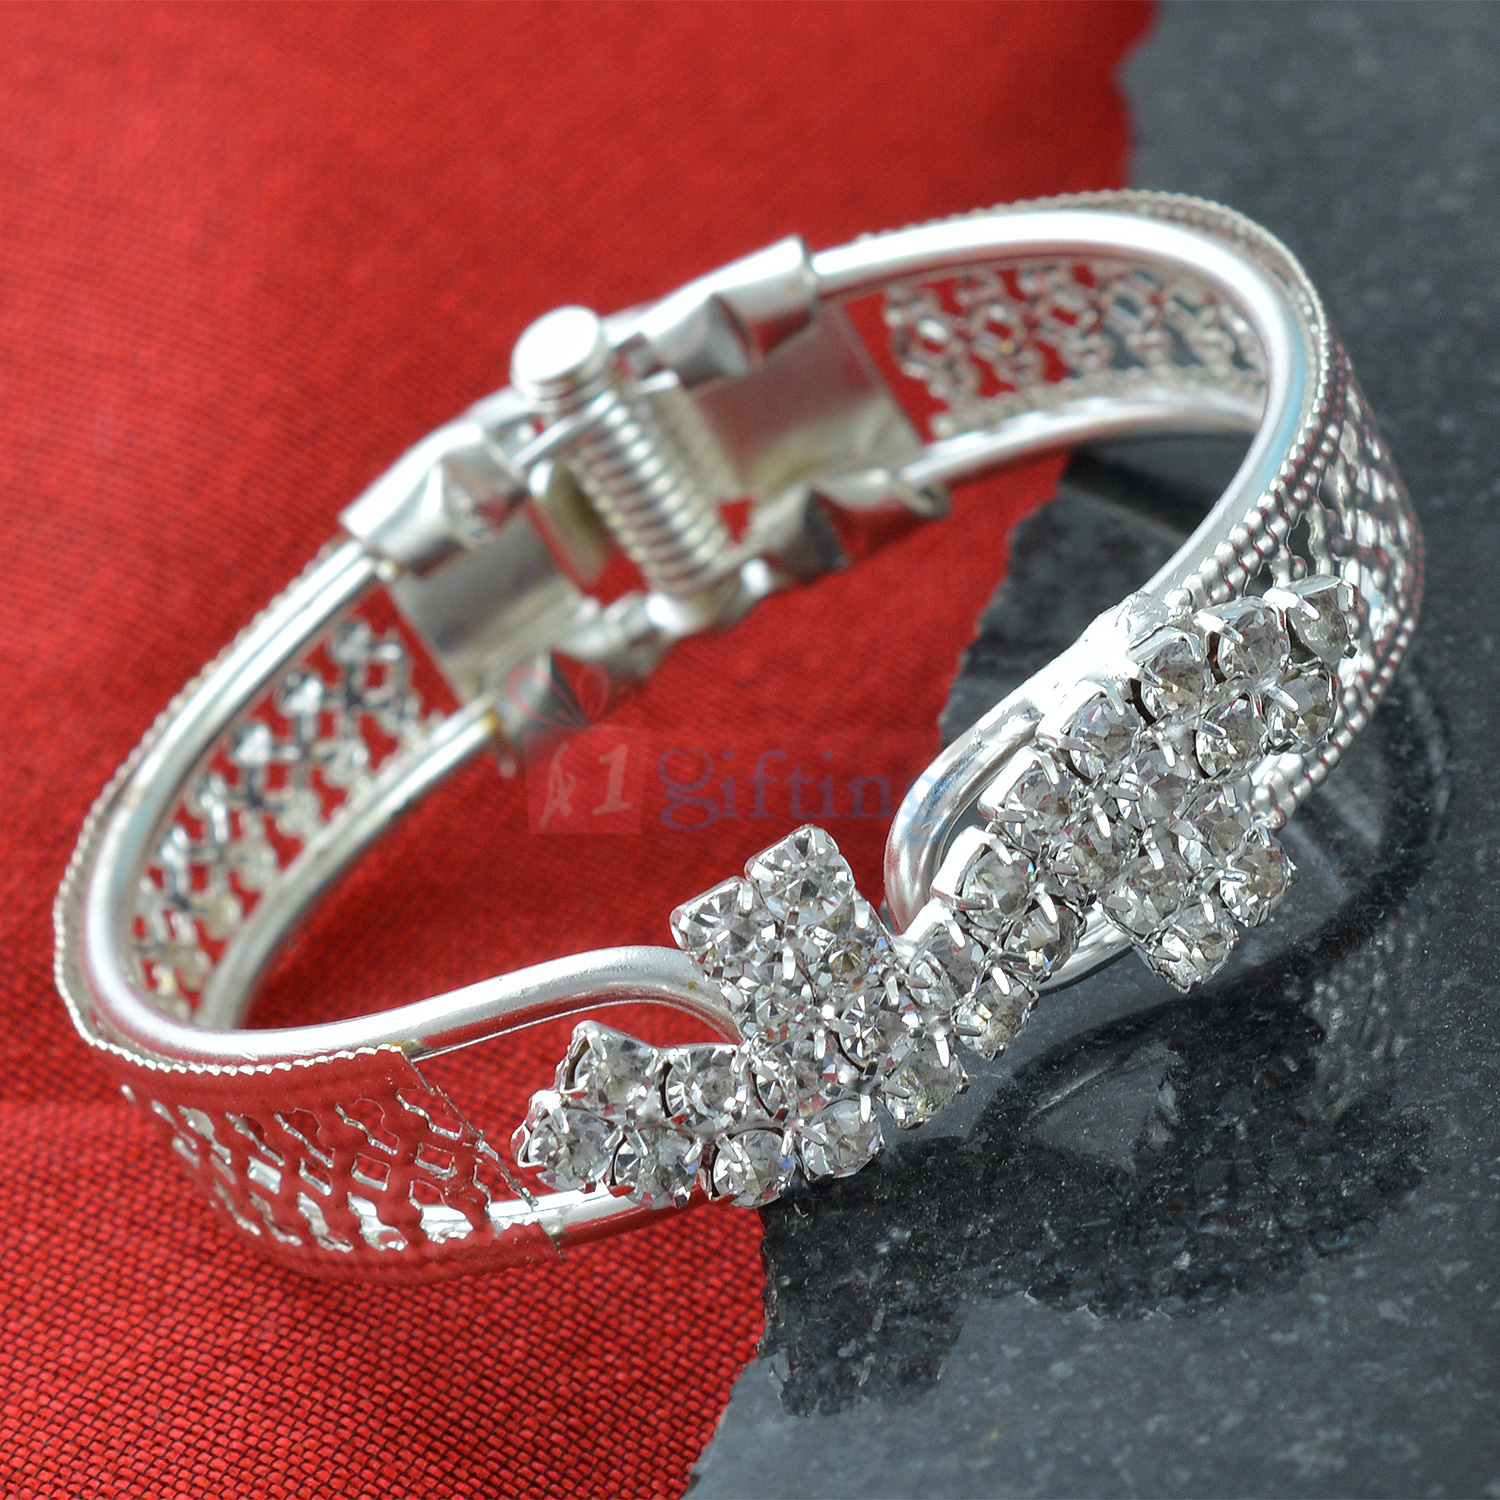 Charming Bangle - Rich Look Diamond Rich Silver Bracelet